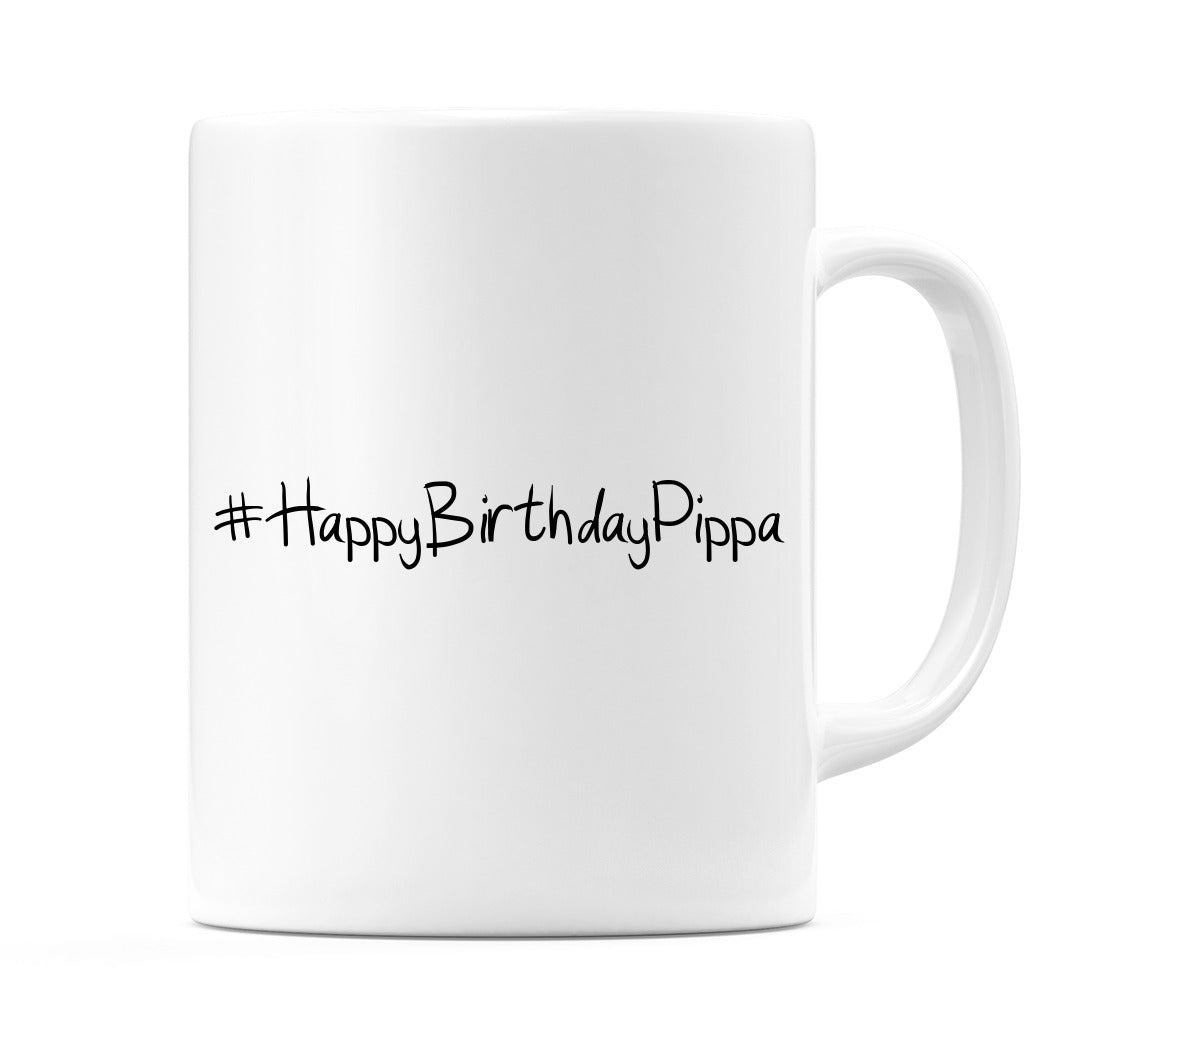 #HappyBirthdayPippa Mug